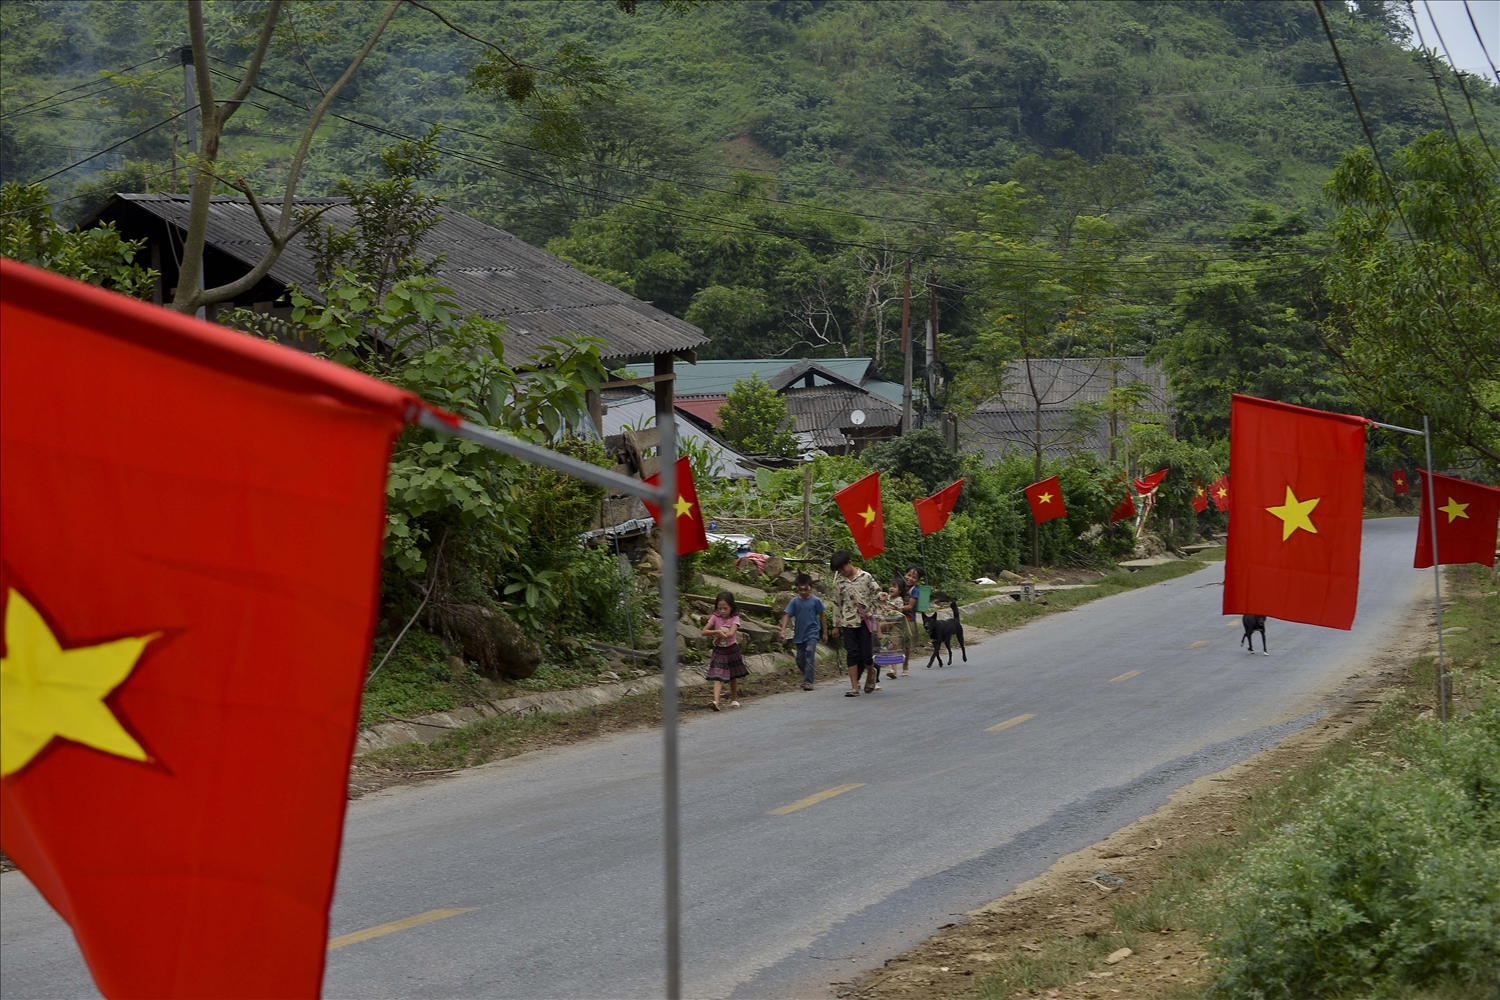 Trên các nẻo đường, mái nhà ở vùng cao Lai Châu, không khí Tết Độc lập đang tràn ngập bởi sắc cờ Tổ quốc.